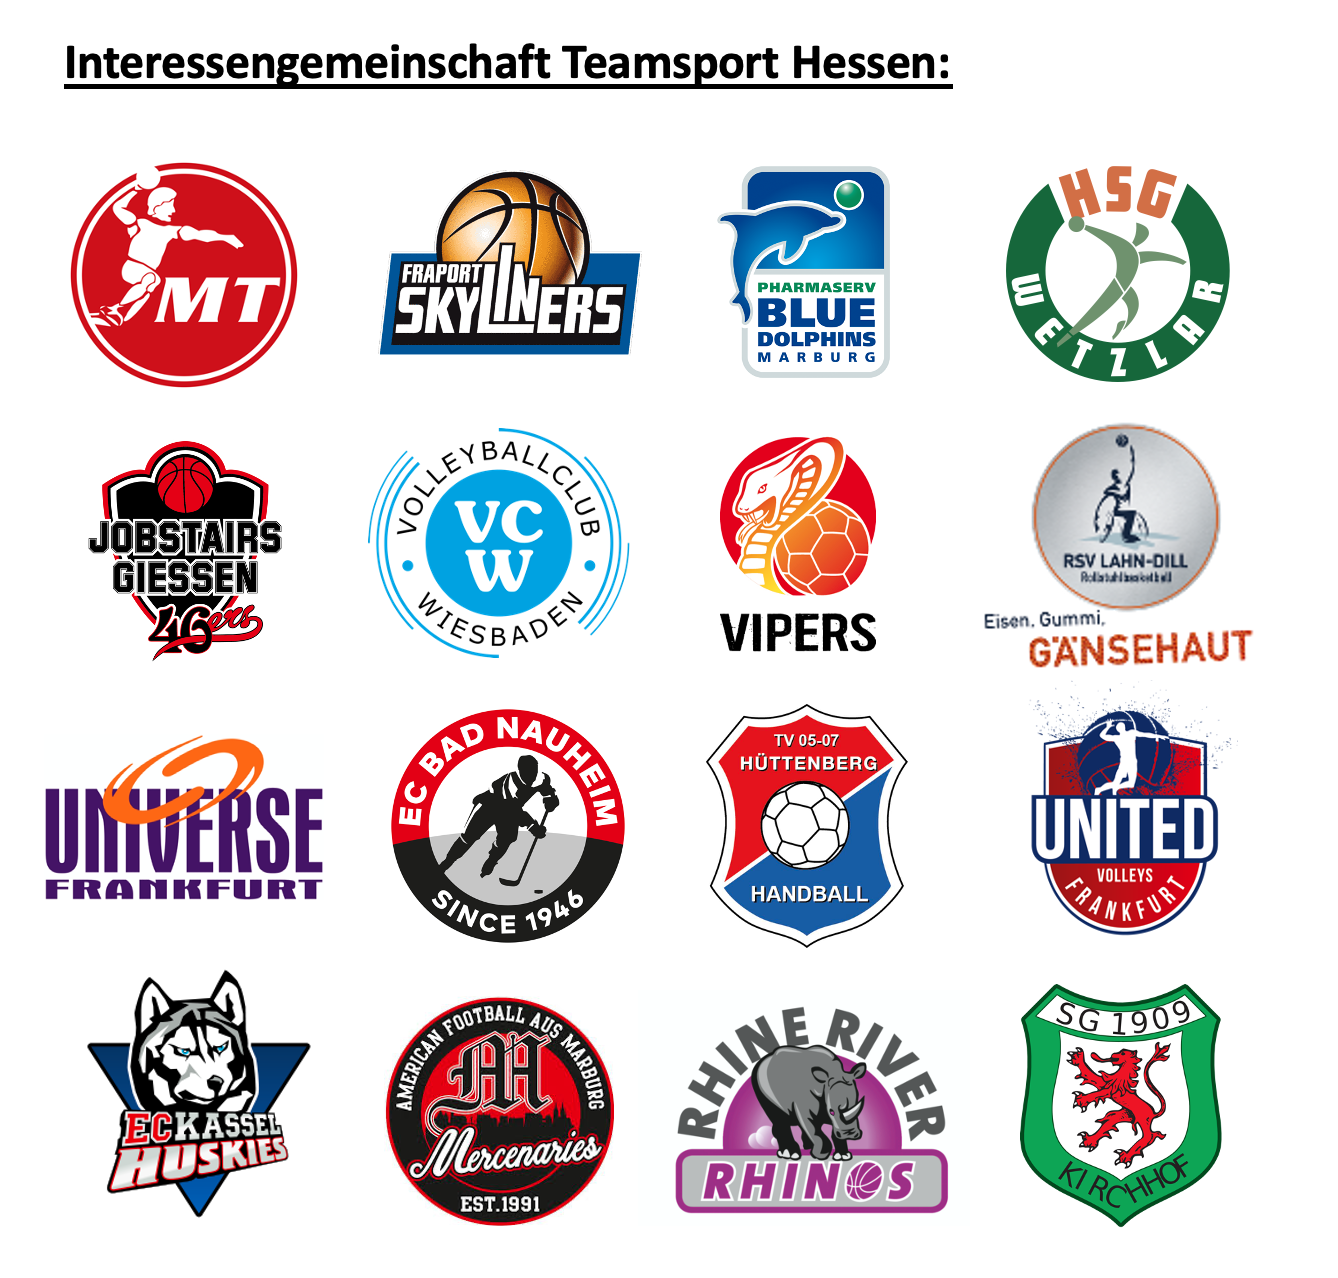 Profi-Clubs halten zusammen – Interessengemeinschaft Teamsport Hessen mit den Marburg Mercenaries 